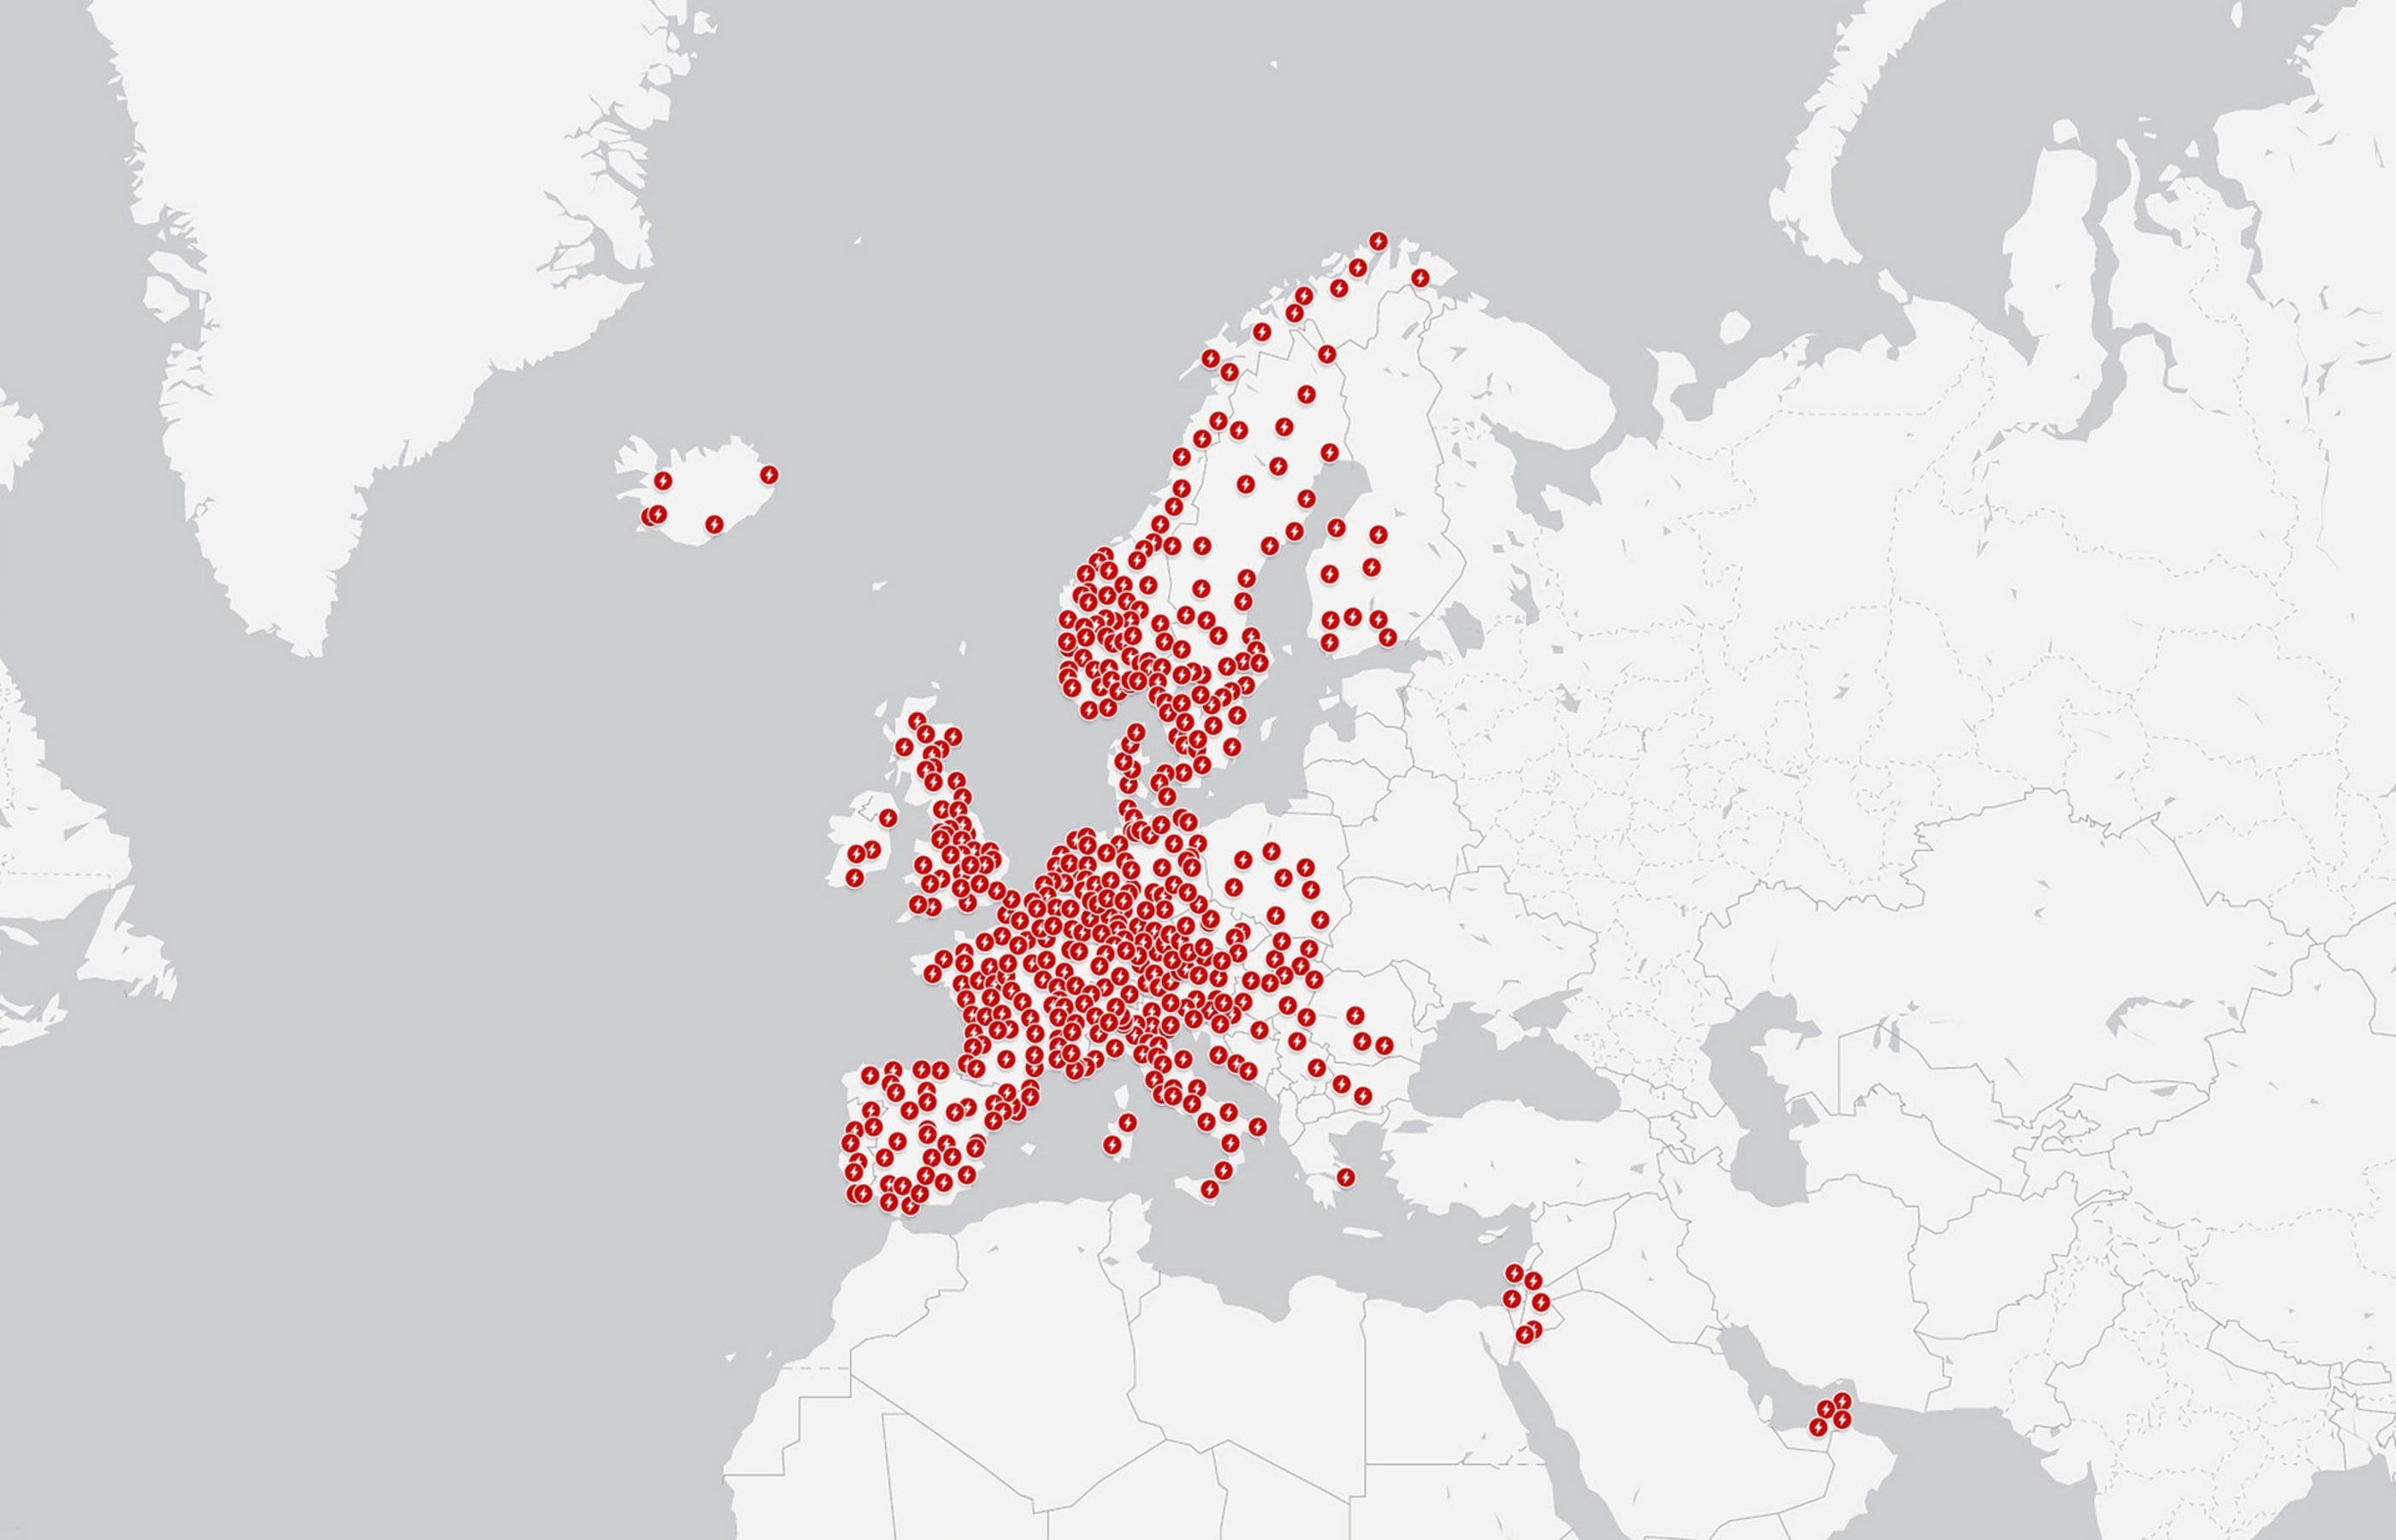 Kort over Superchargere i Europa og Mellemøsten